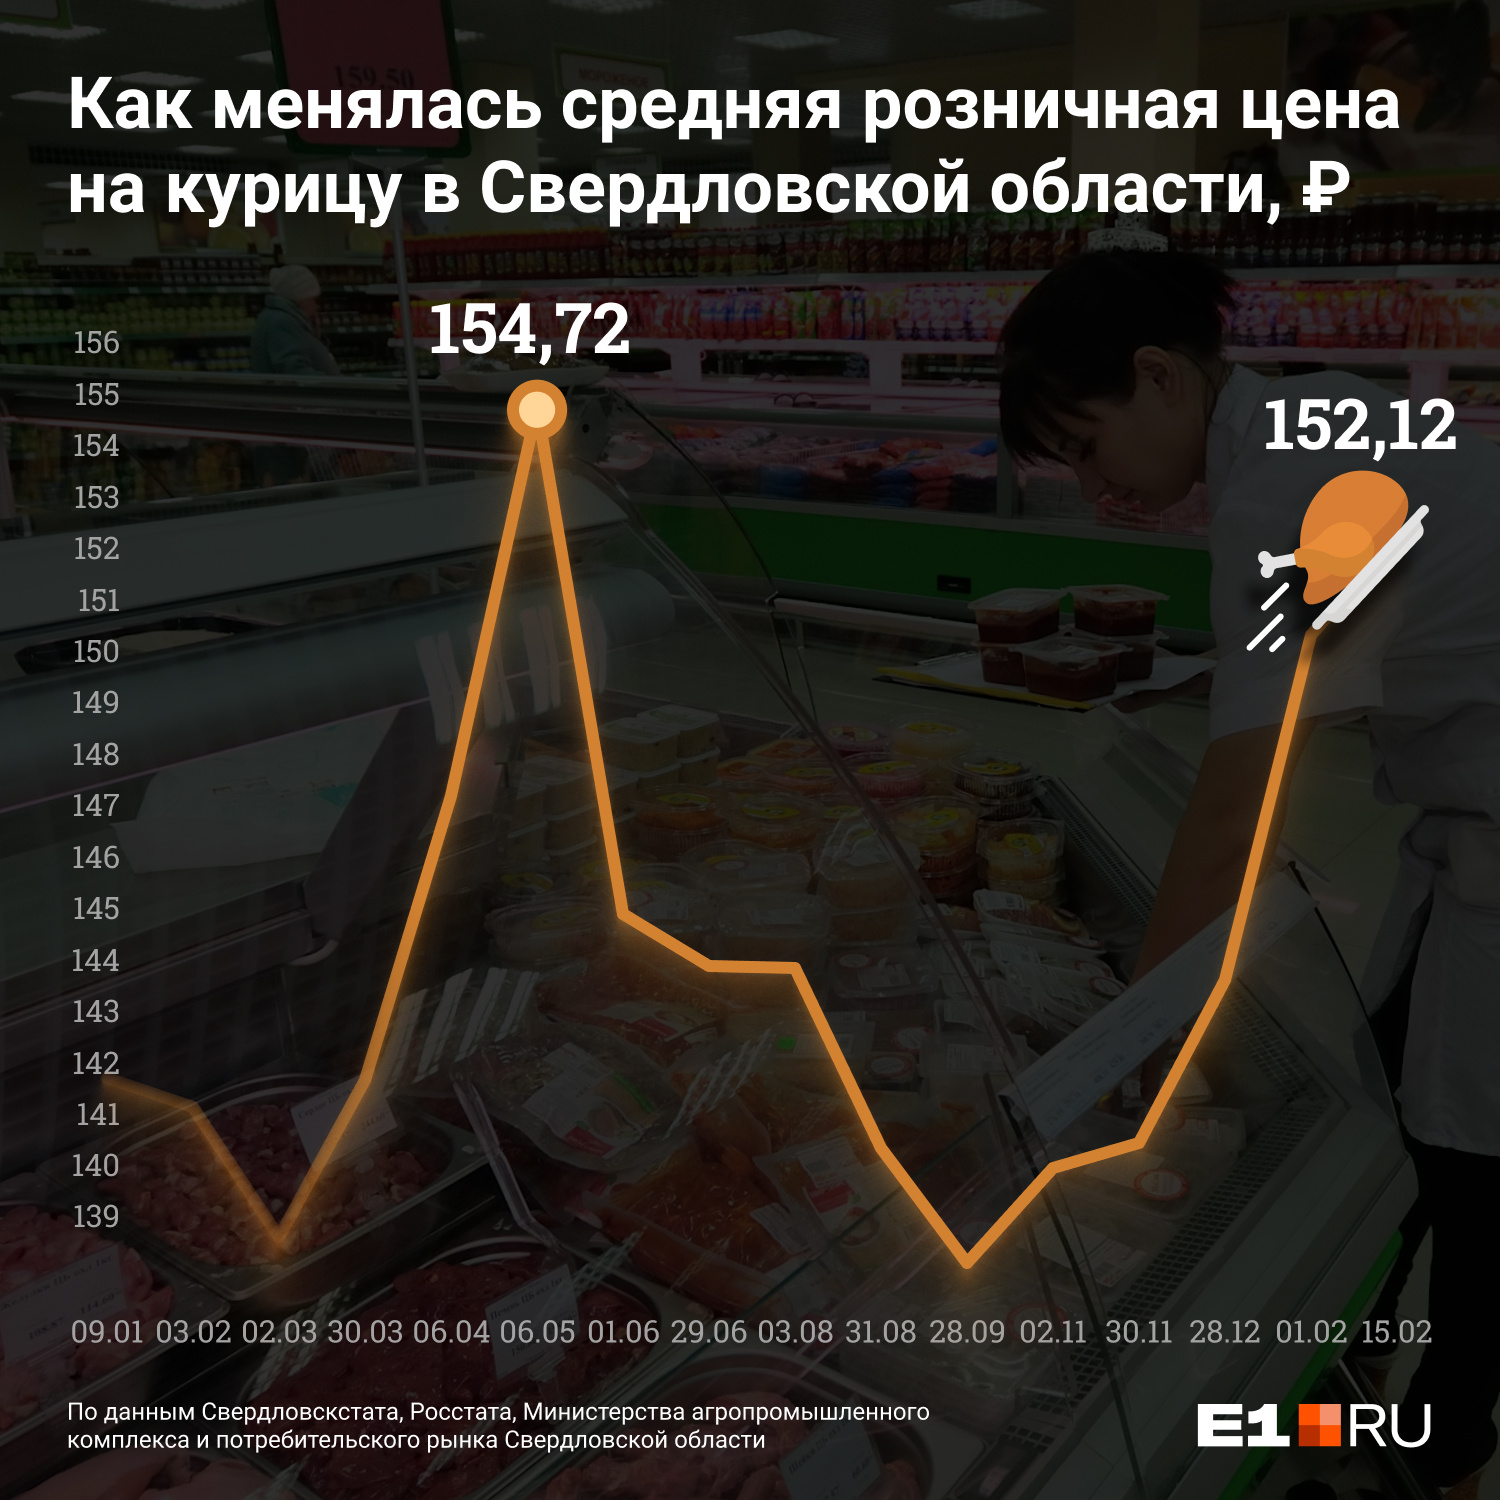 На графике представлена средняя розничная цена за килограмм охлажденной и замороженной курицы